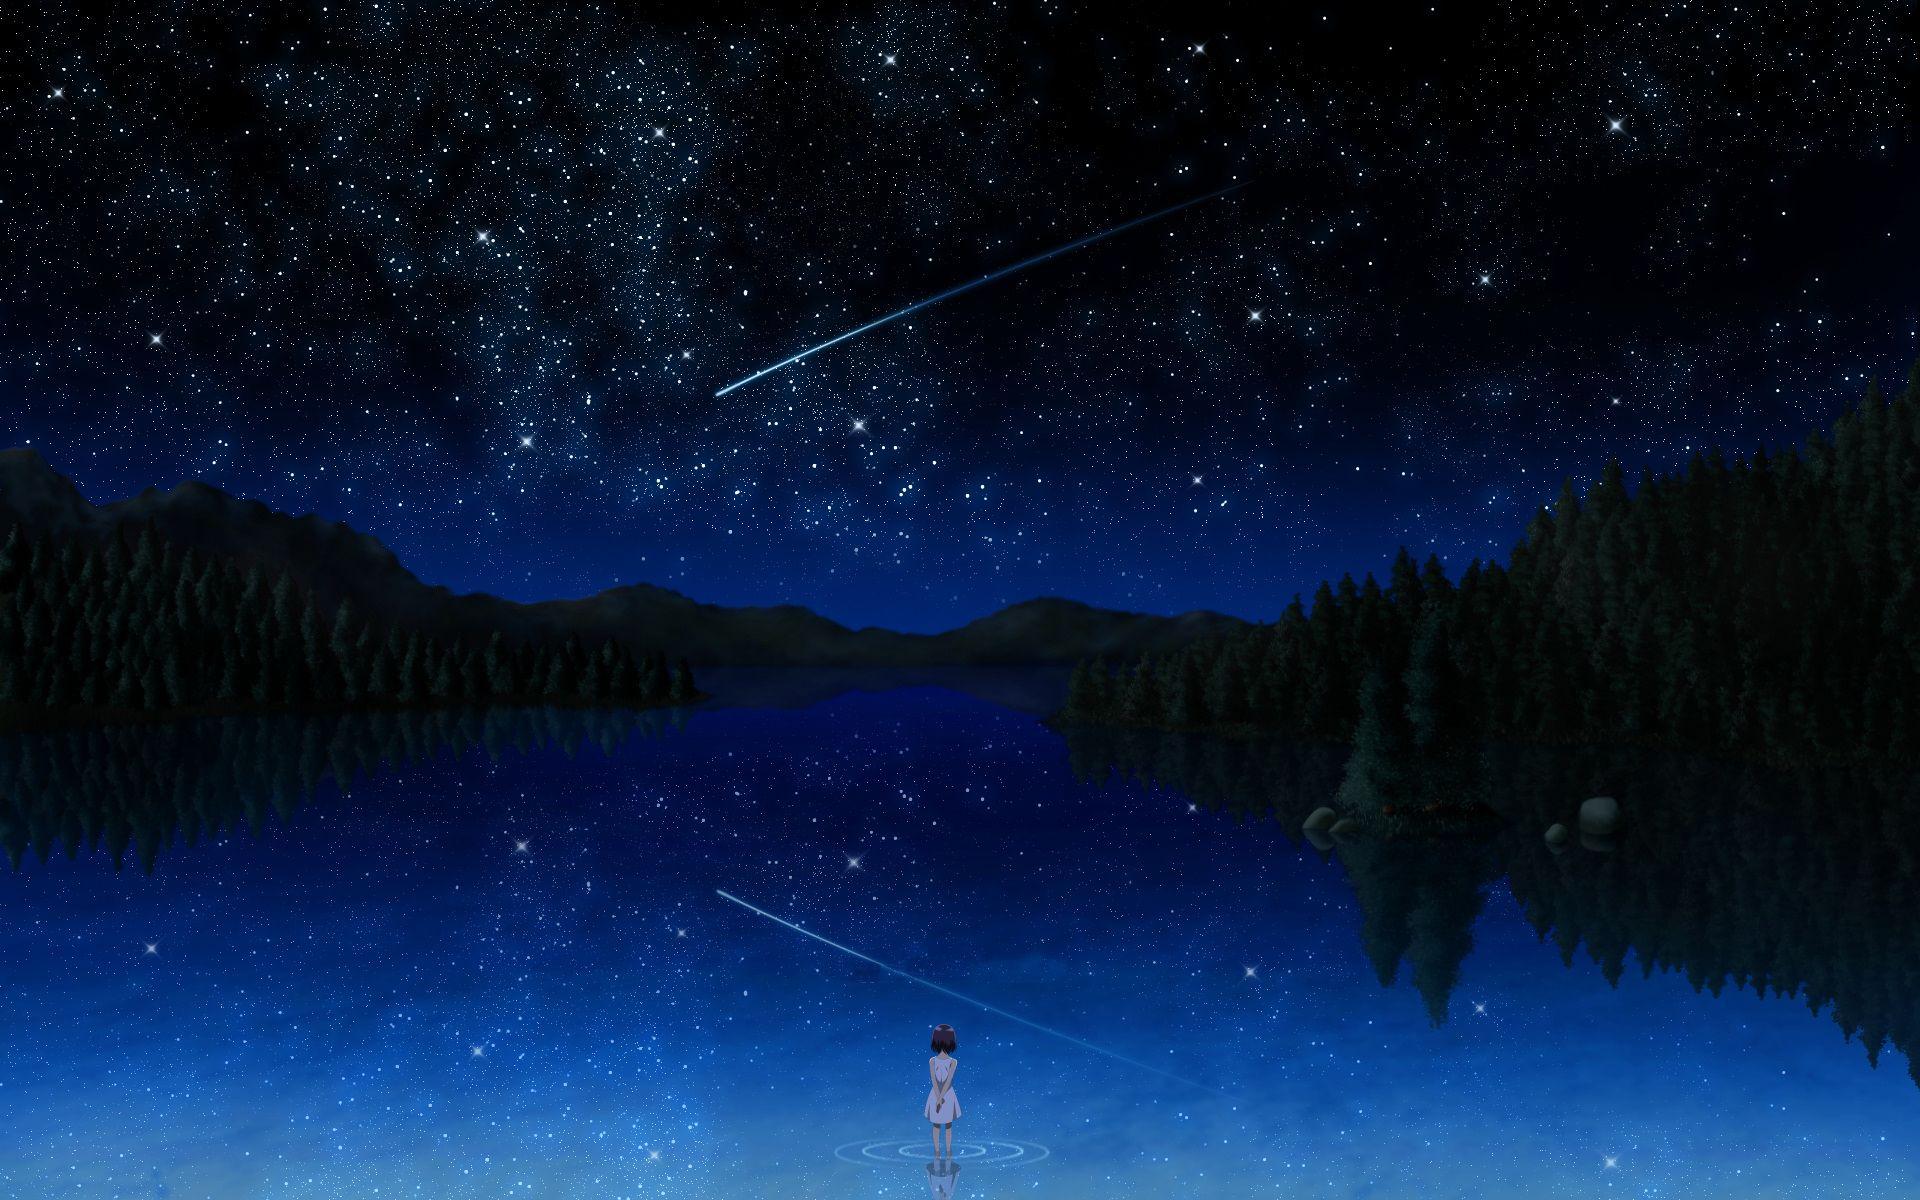  Anime Night  Sky Wallpapers Top Free Anime Night  Sky 